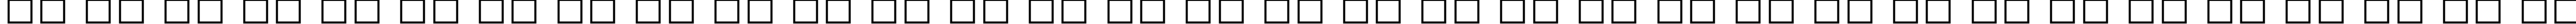 Пример написания русского алфавита шрифтом Bermuda Solid